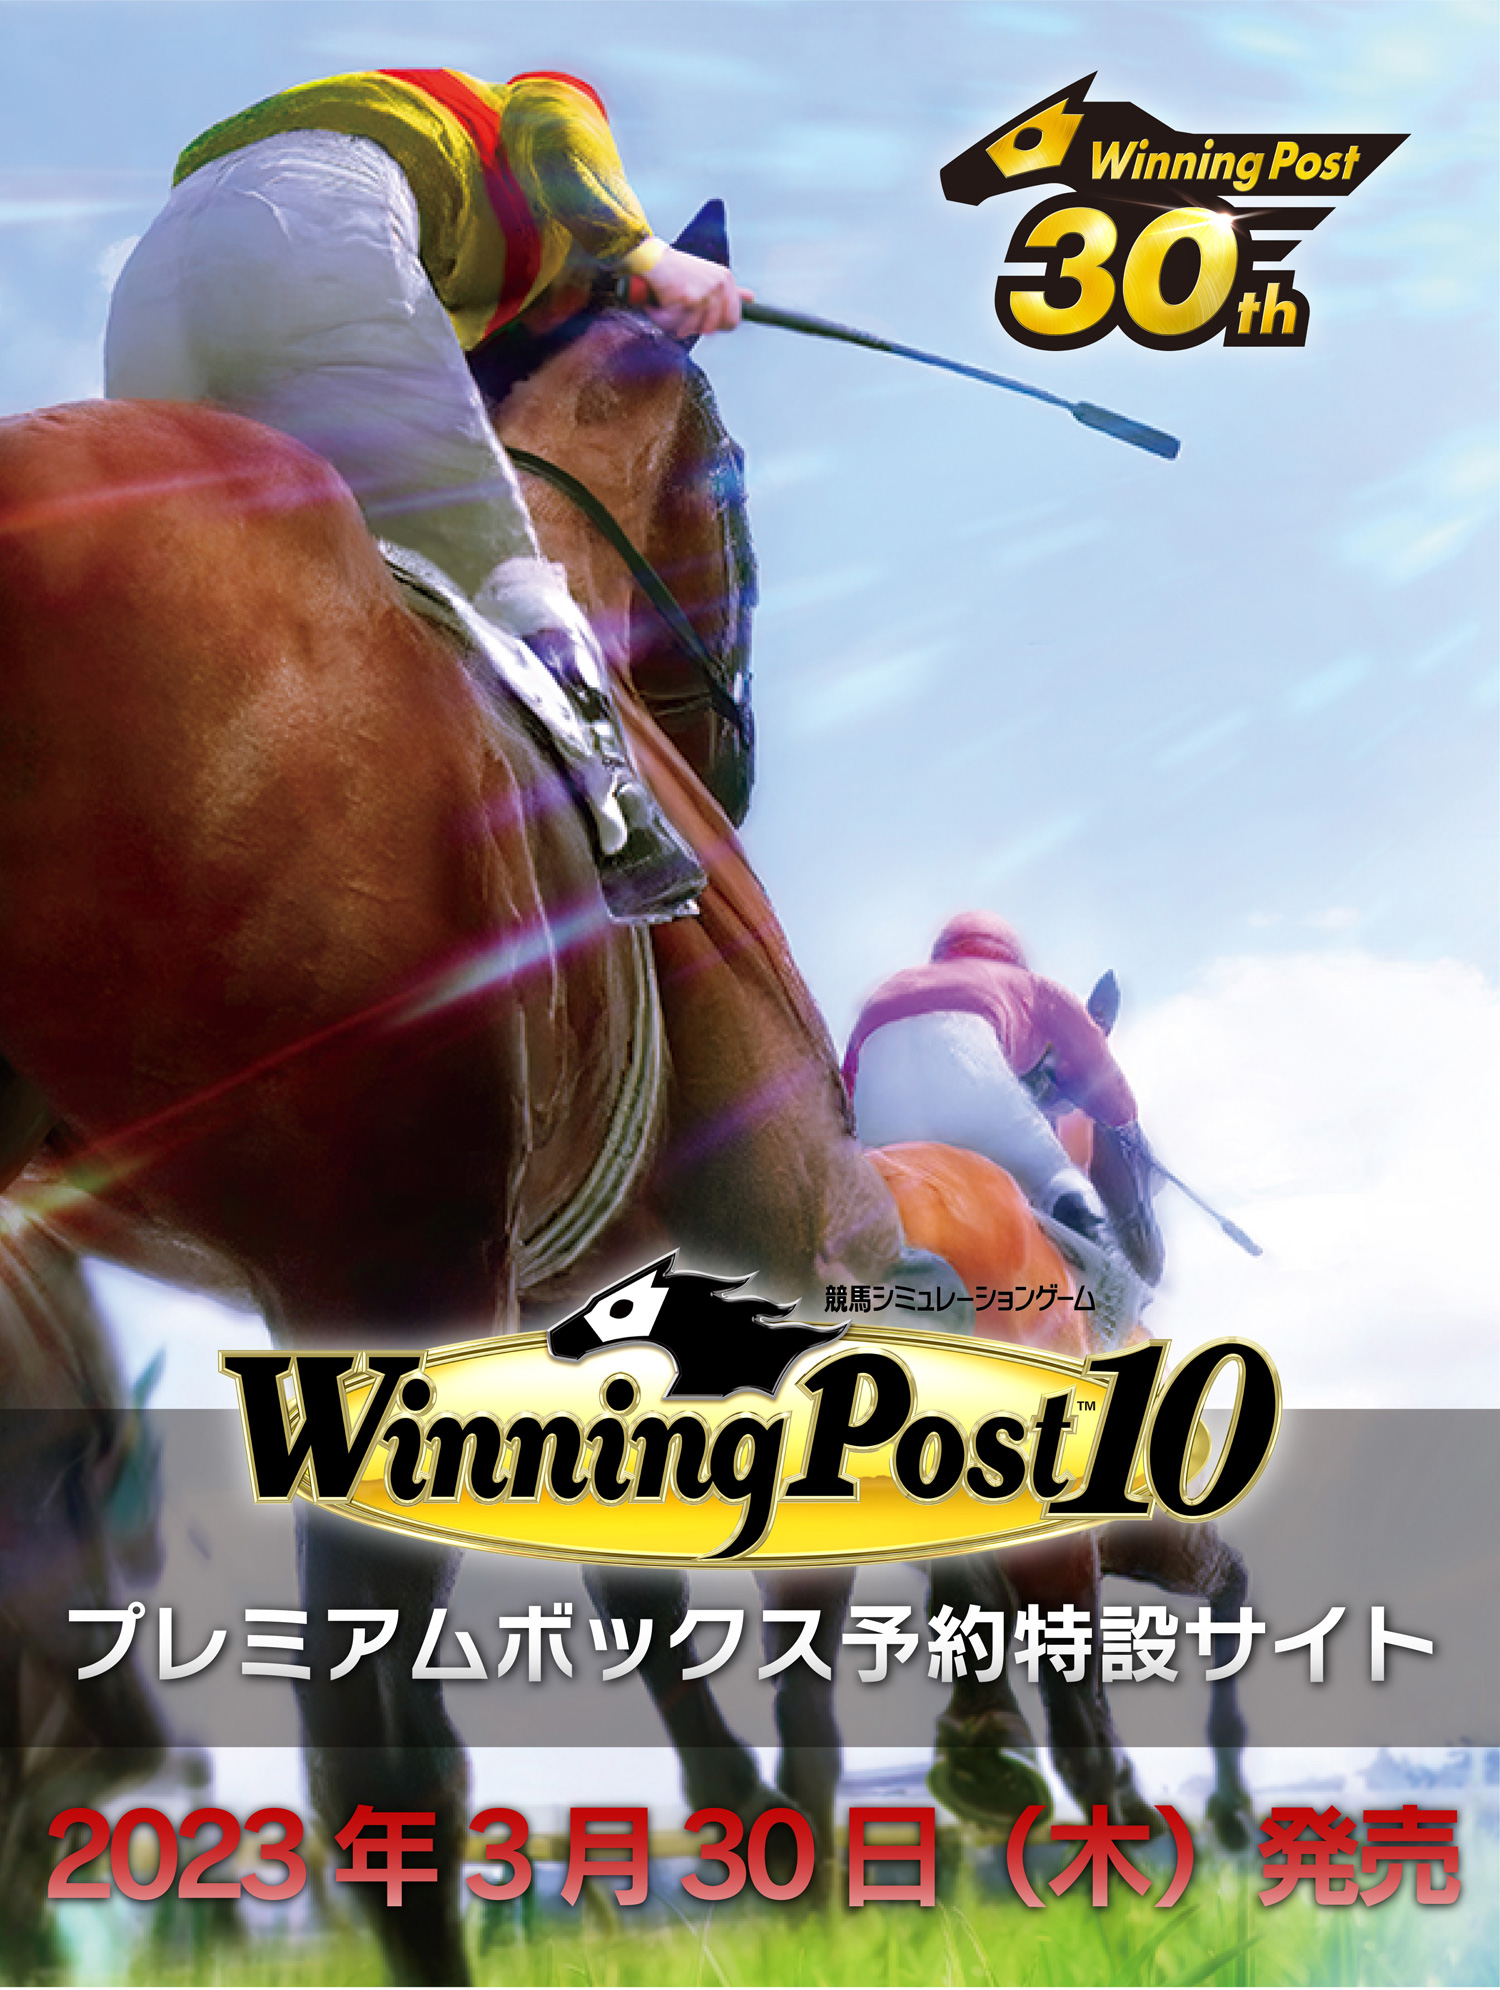 Winning Post 10